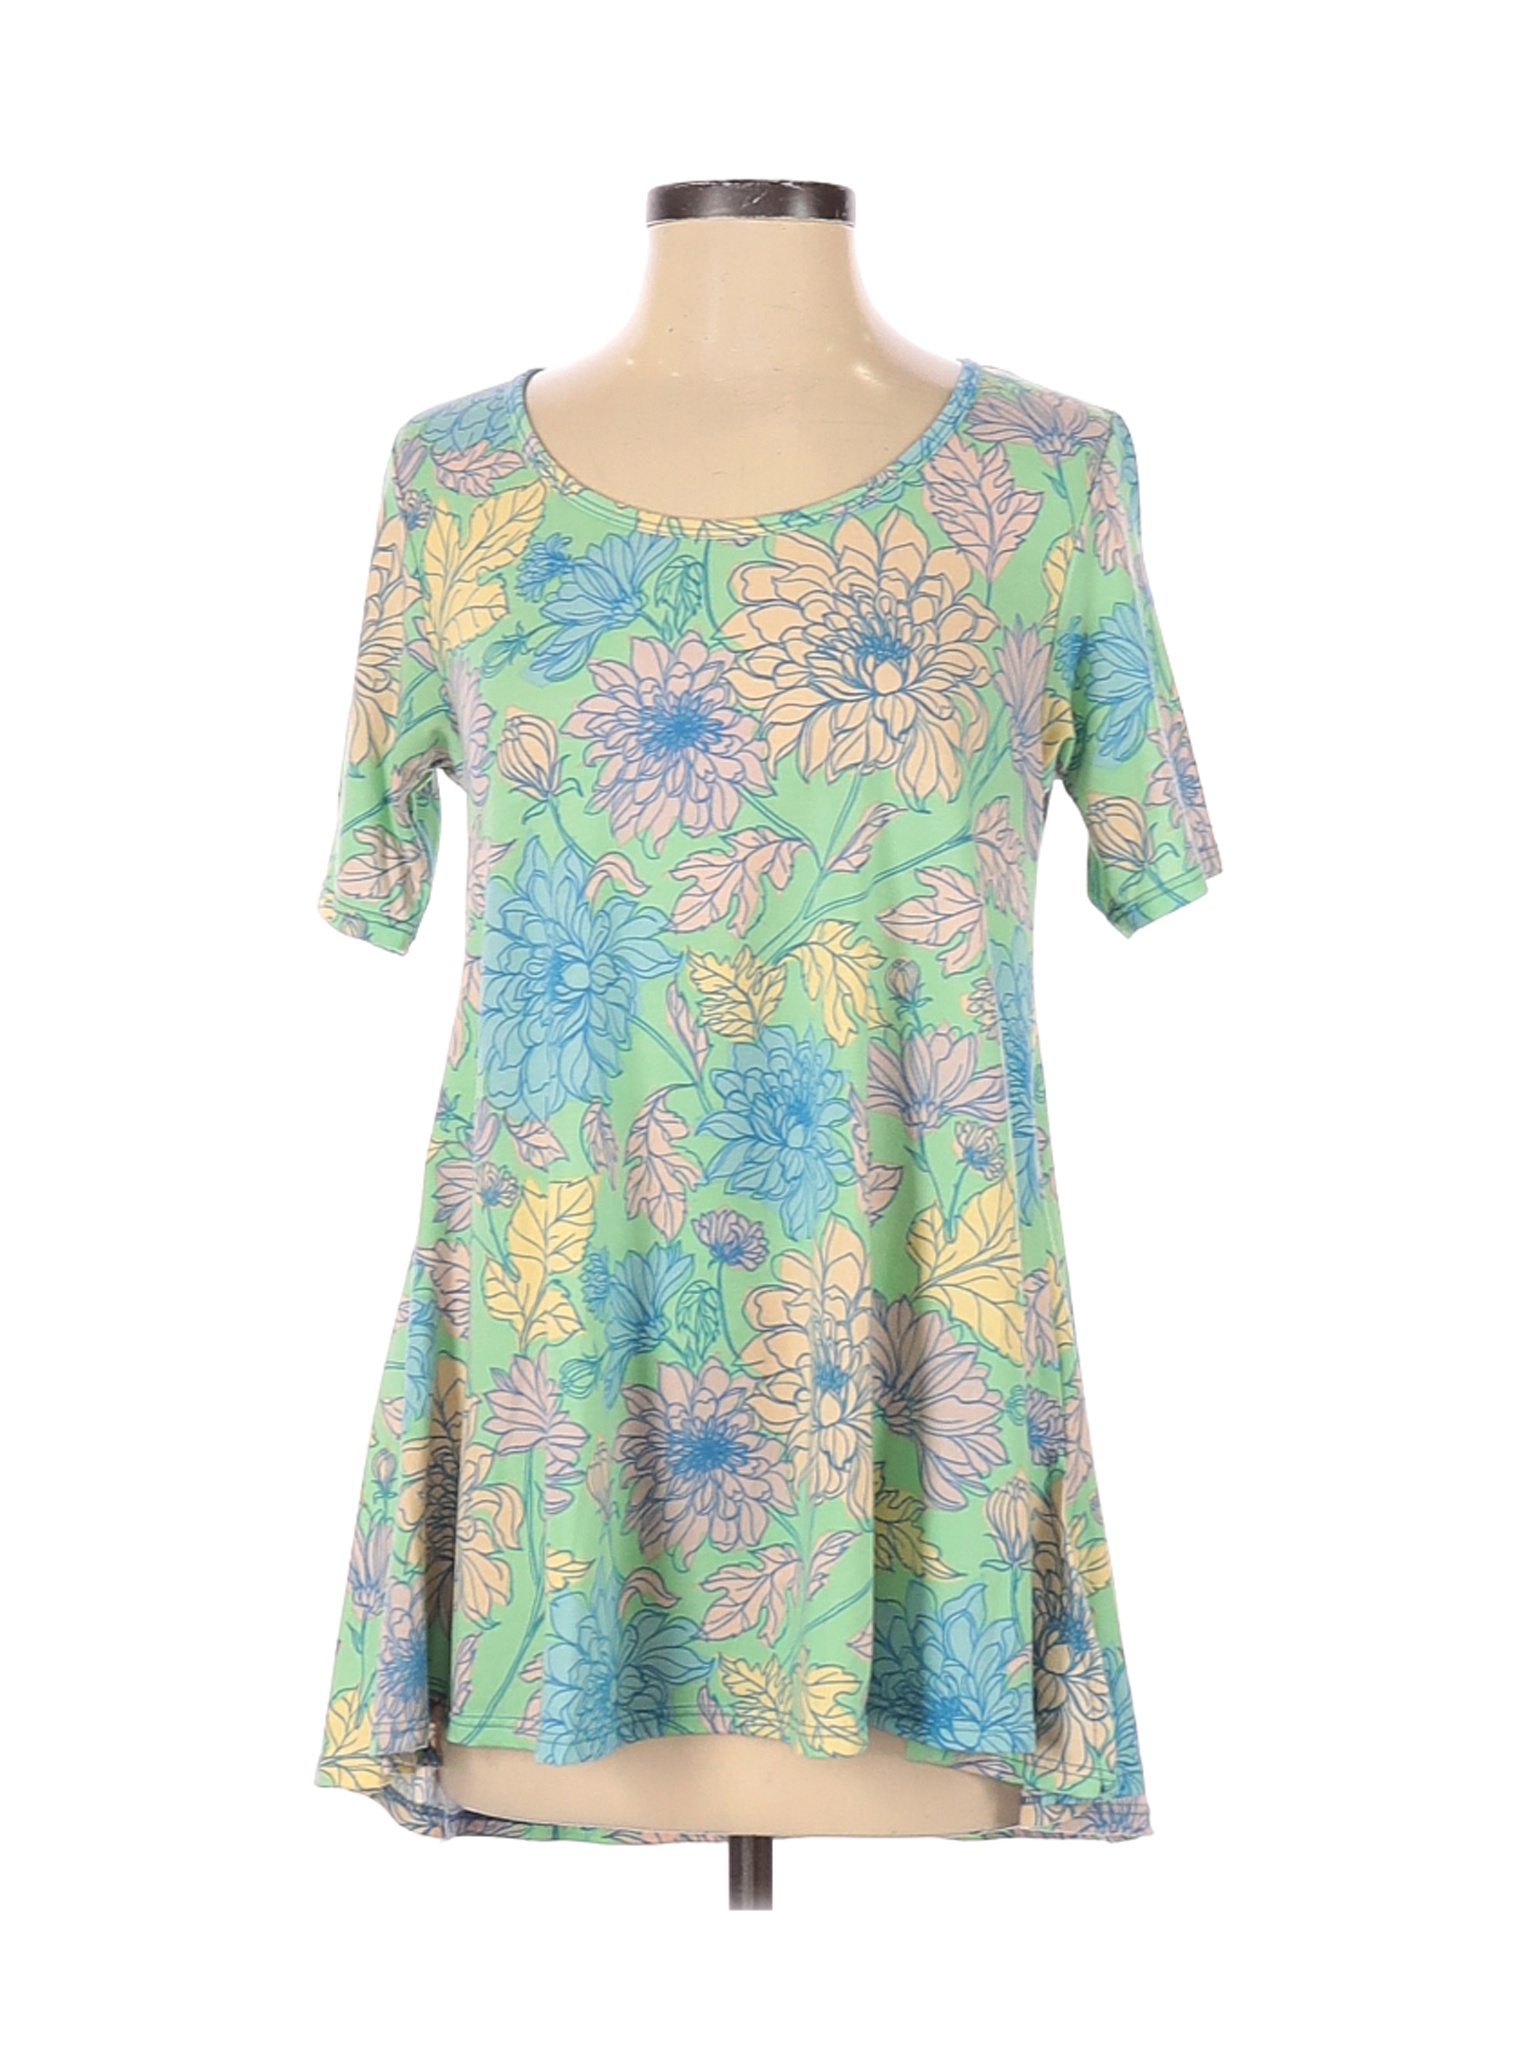 Lularoe Women Green Short Sleeve Top XXS | eBay